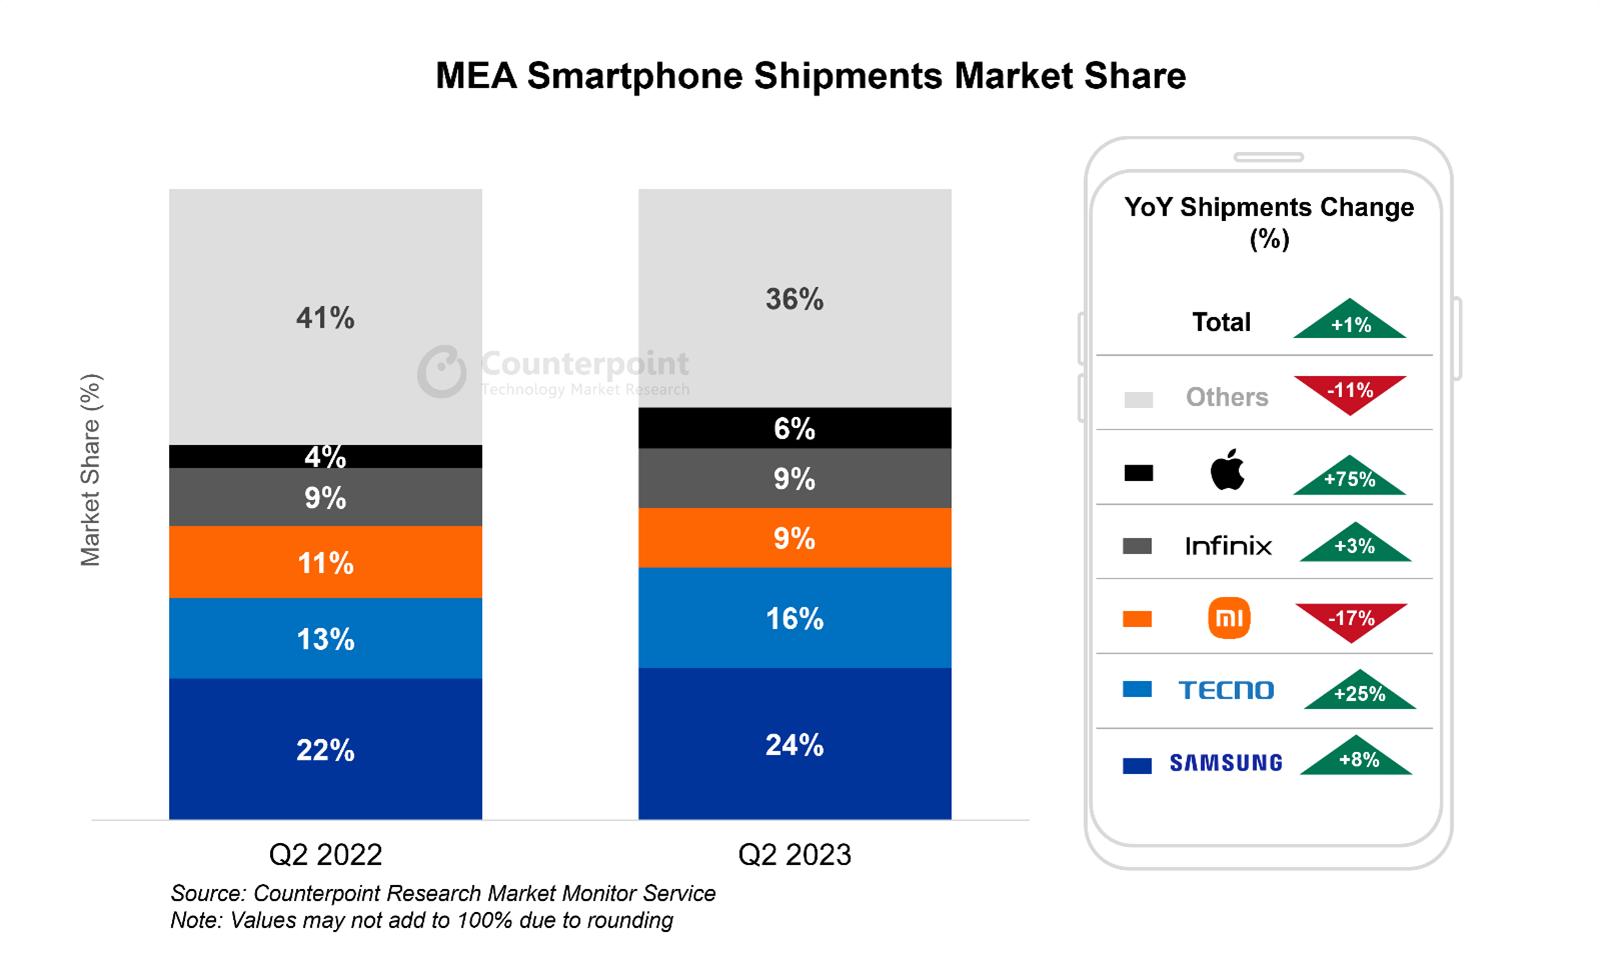 意味着智能手机shipments market share